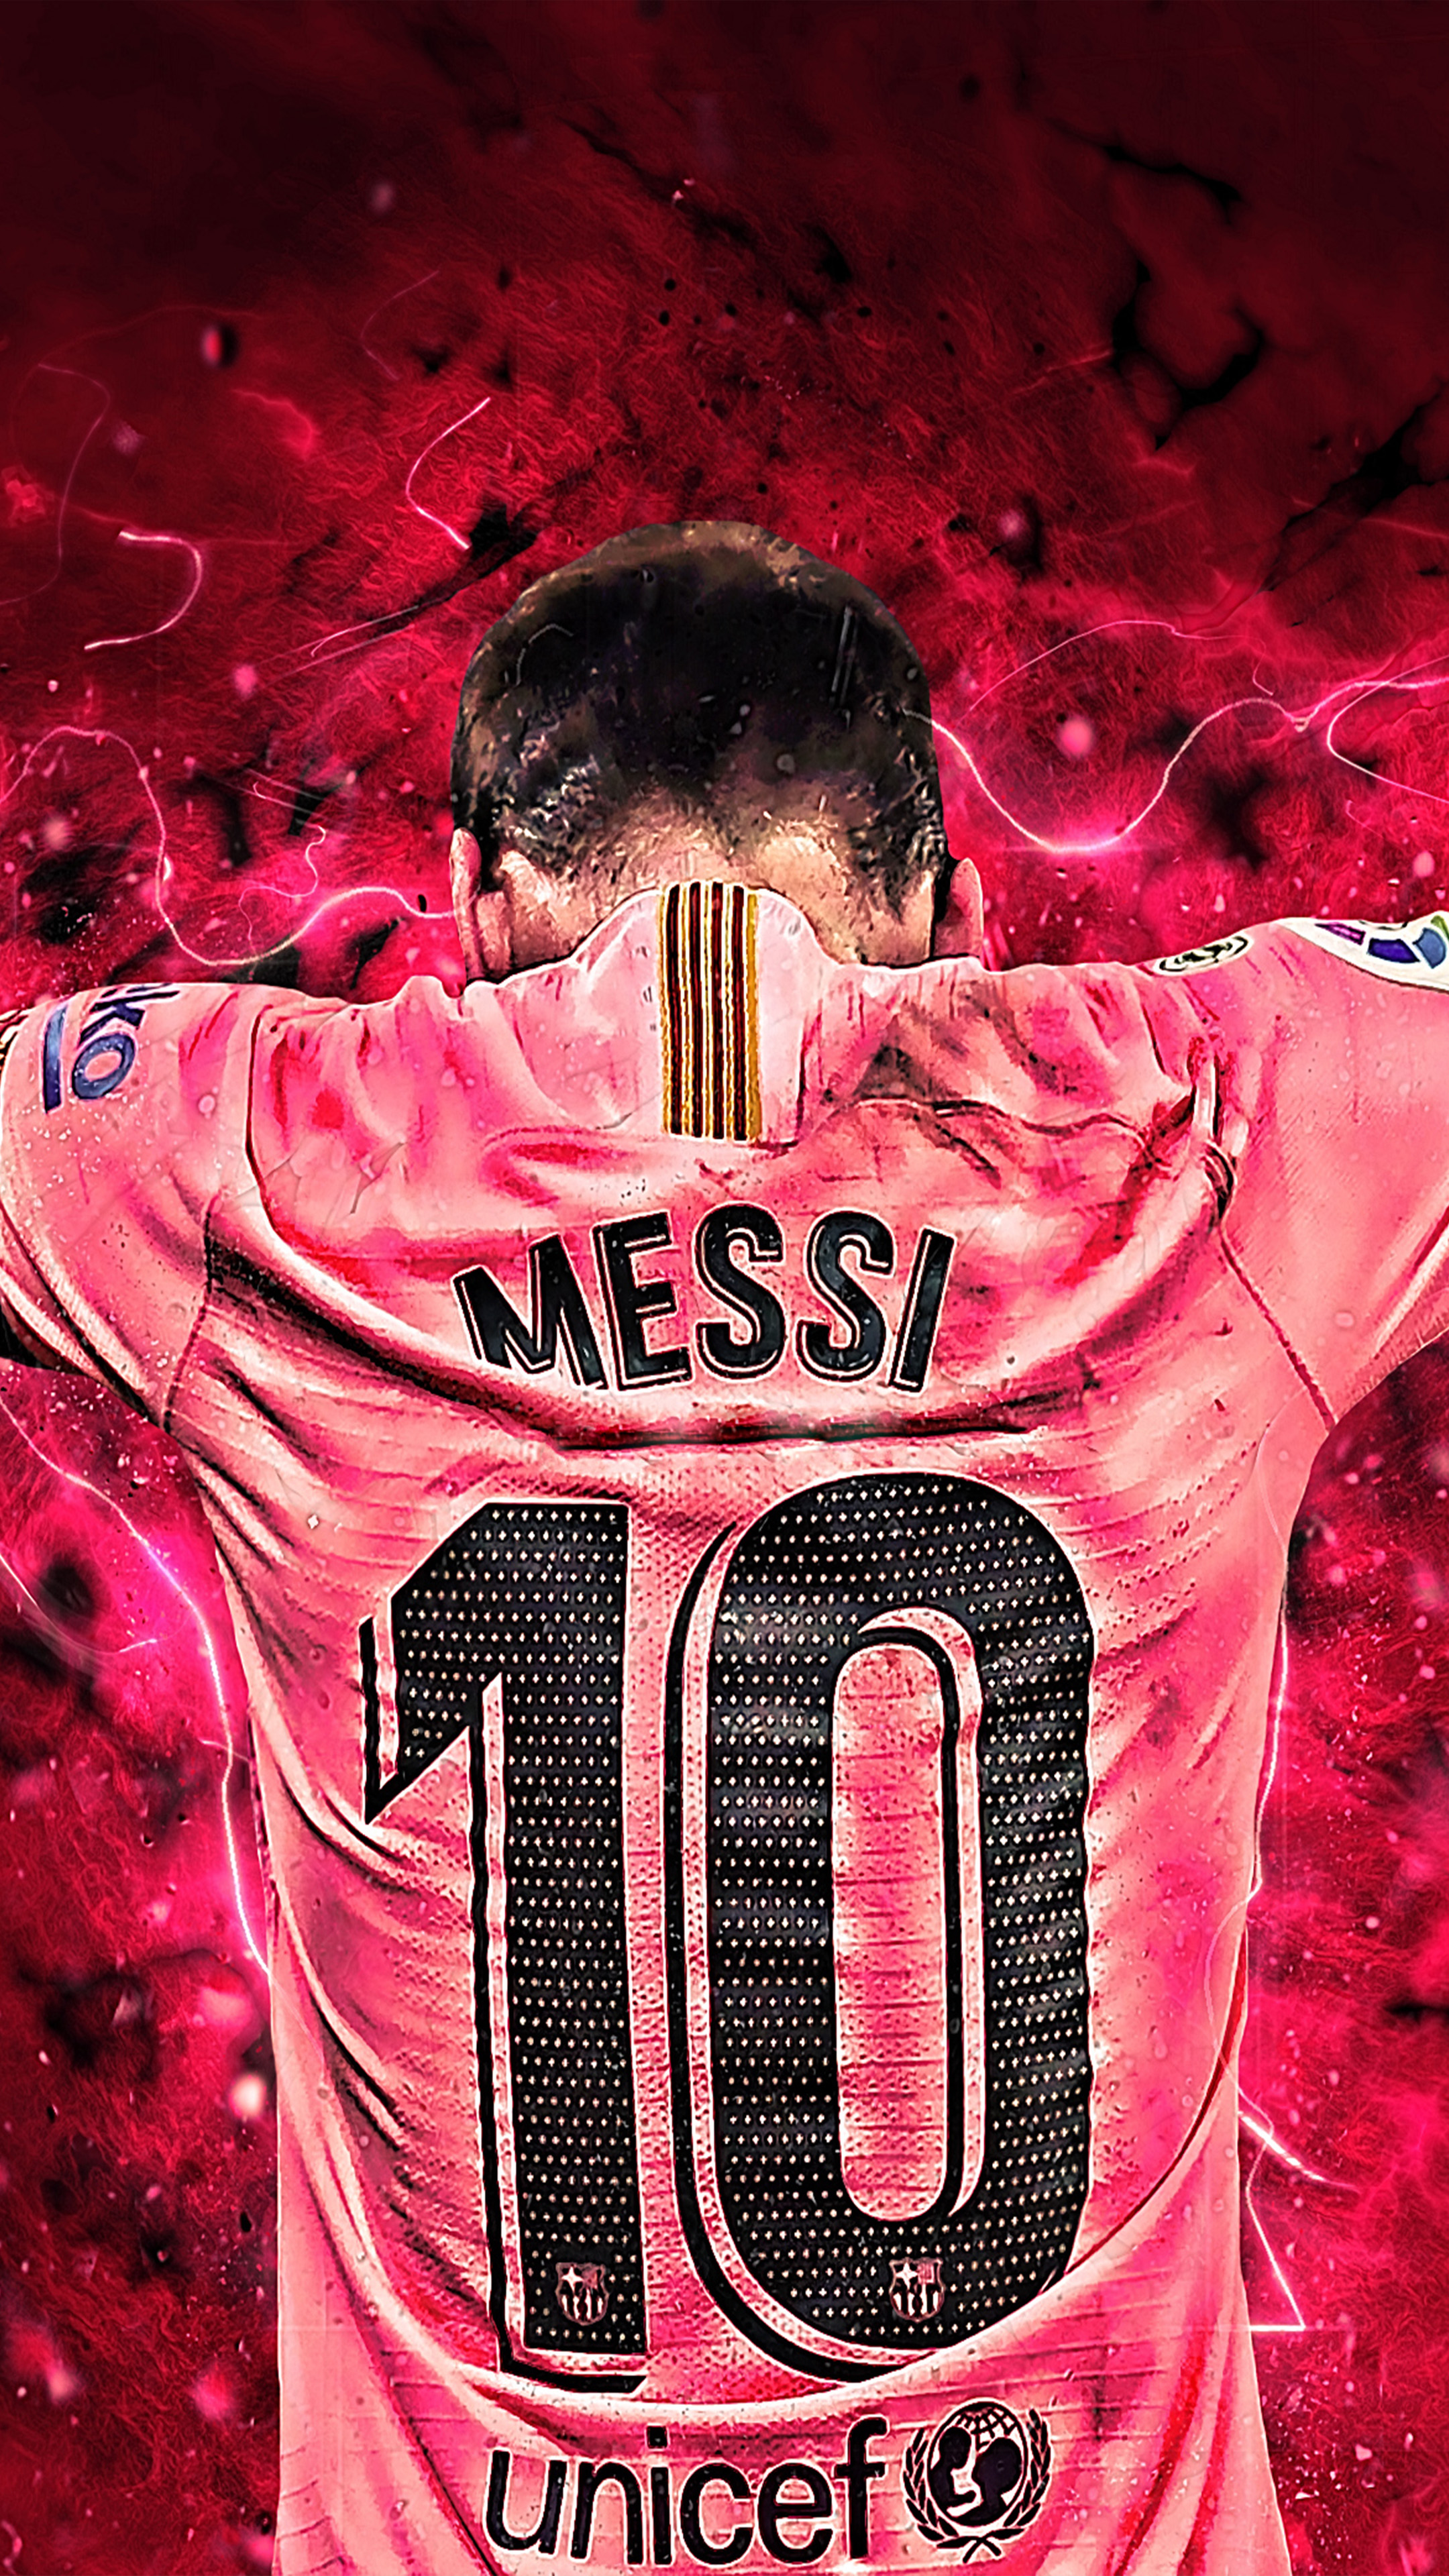 Với sự kết hợp của Messi 10 và đồ họa nghệ thuật, những hình ảnh này chắc chắn sẽ khiến bạn phải trầm trồ. Với chất lượng 4K siêu nét, chúng tôi tự tin đem đến cho bạn những bức tranh sống động và ấn tượng.